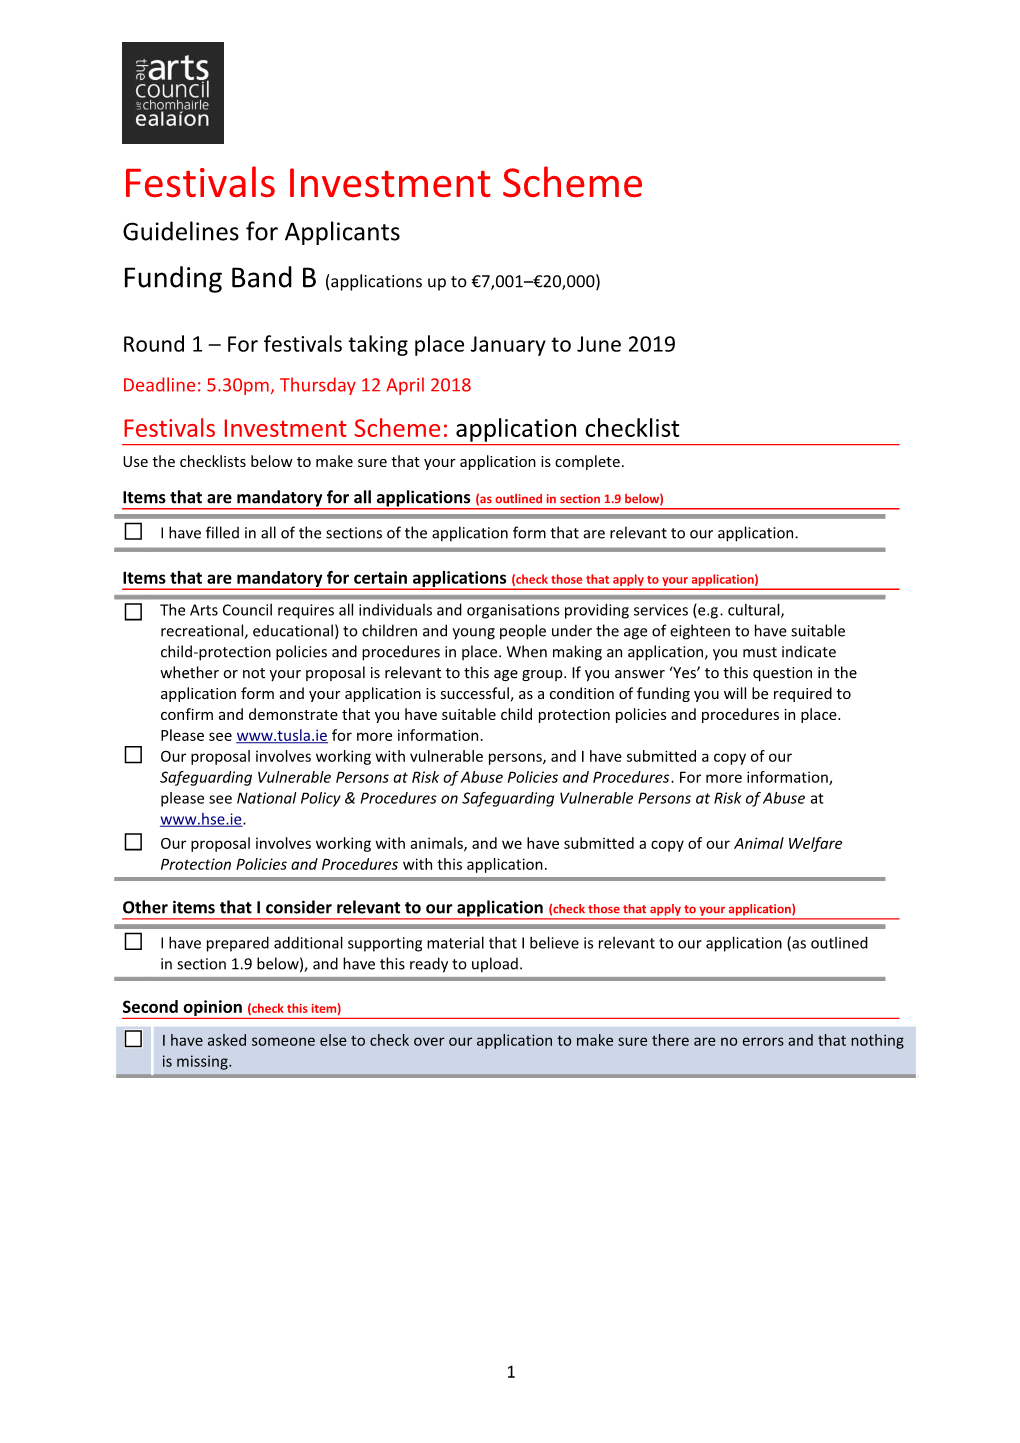 Festivals Investment Scheme: Application Checklist